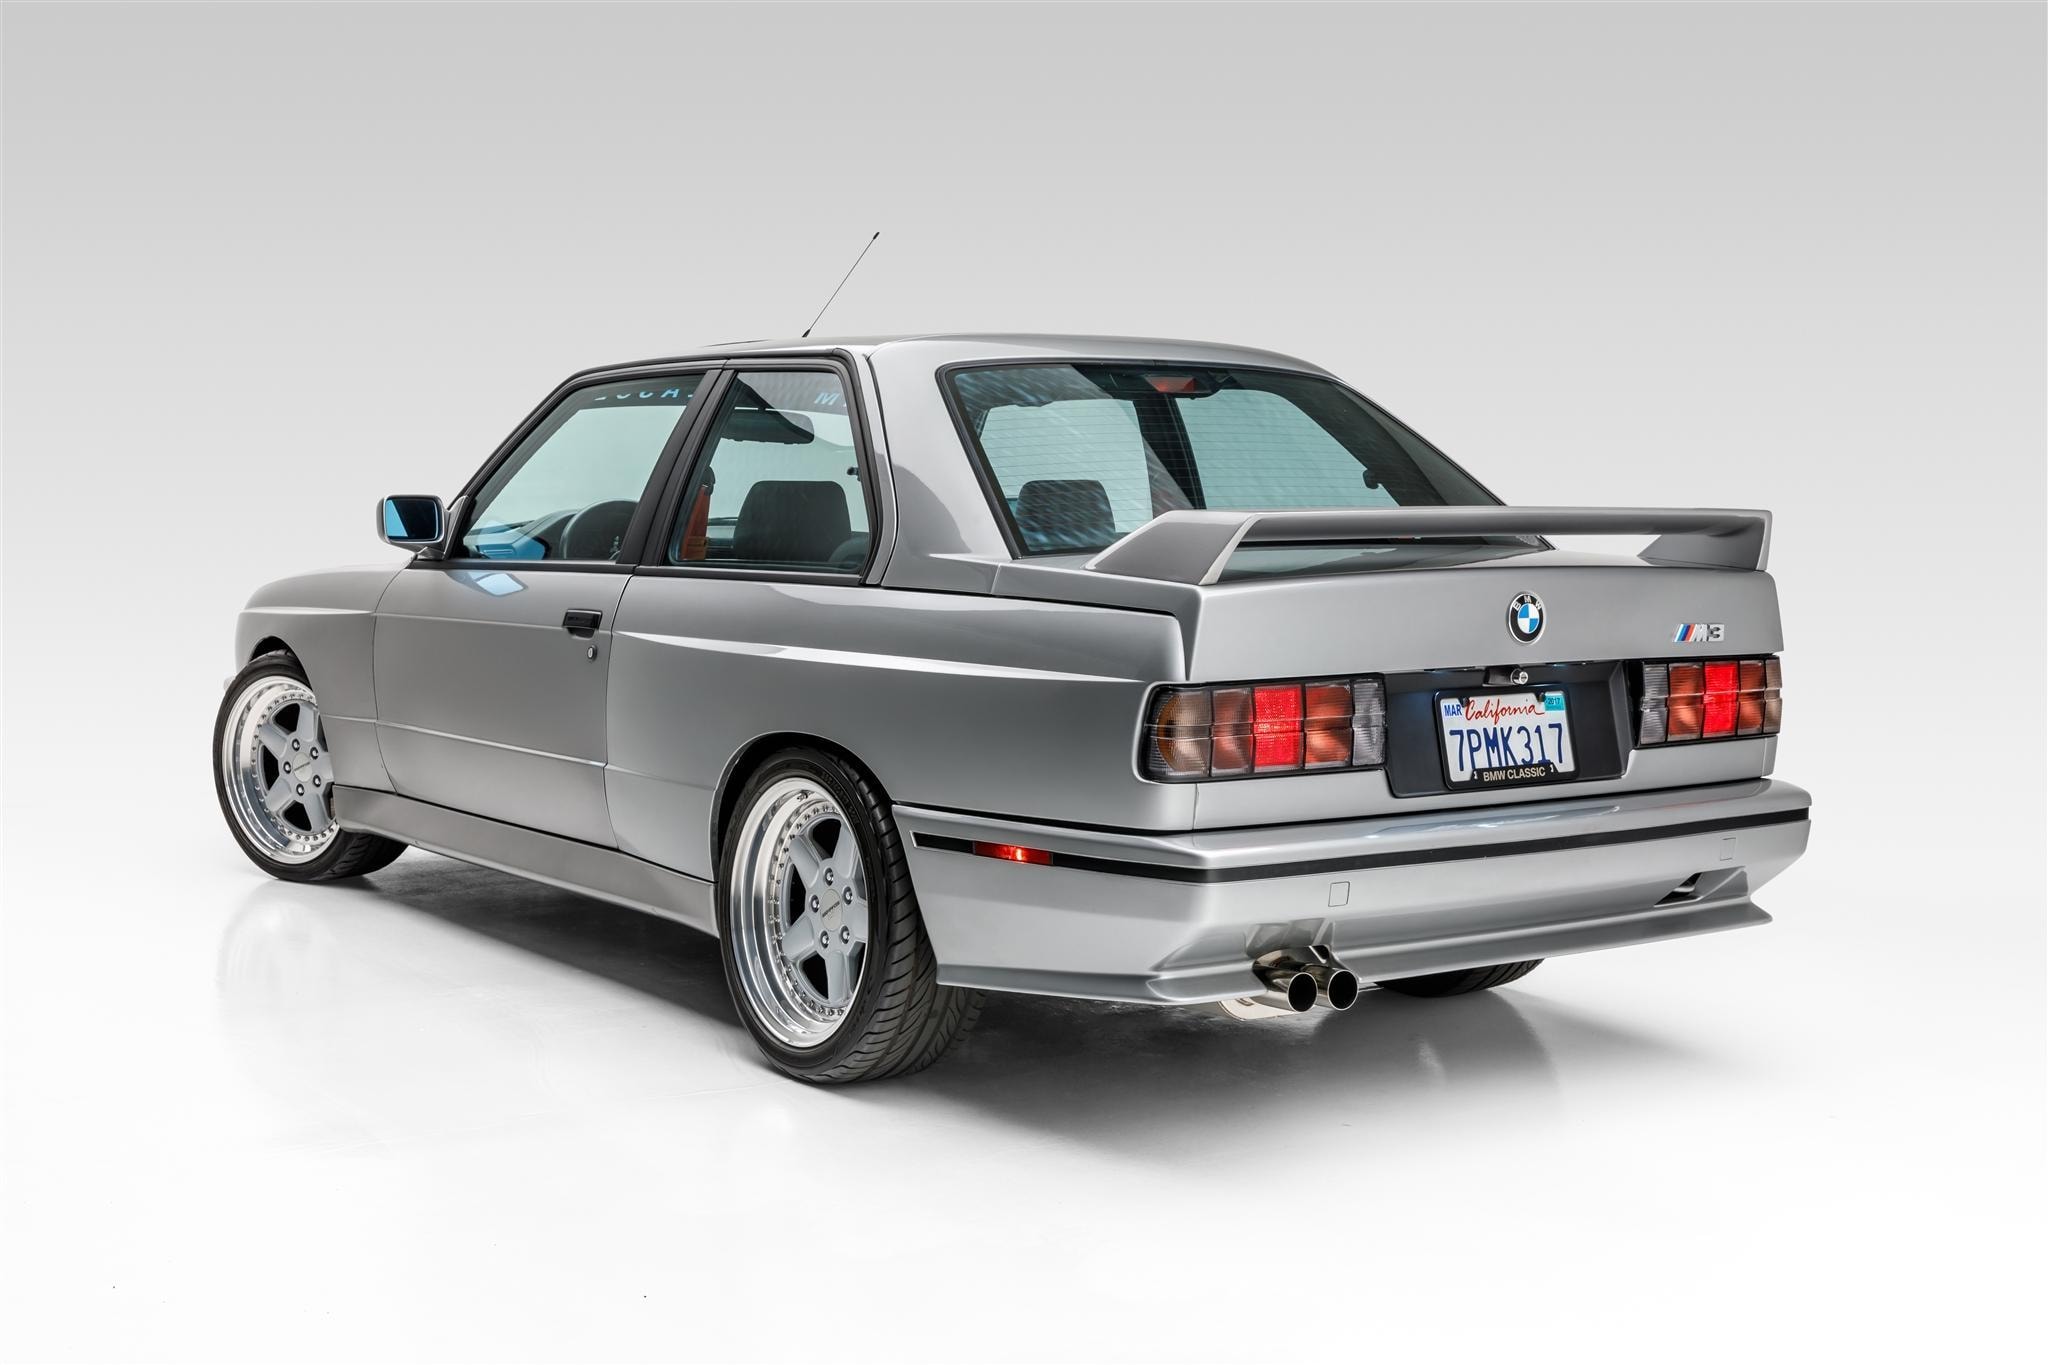 1988 年 BMW E30 M3 改裝車款以超過 $50,000 美元高價拍賣